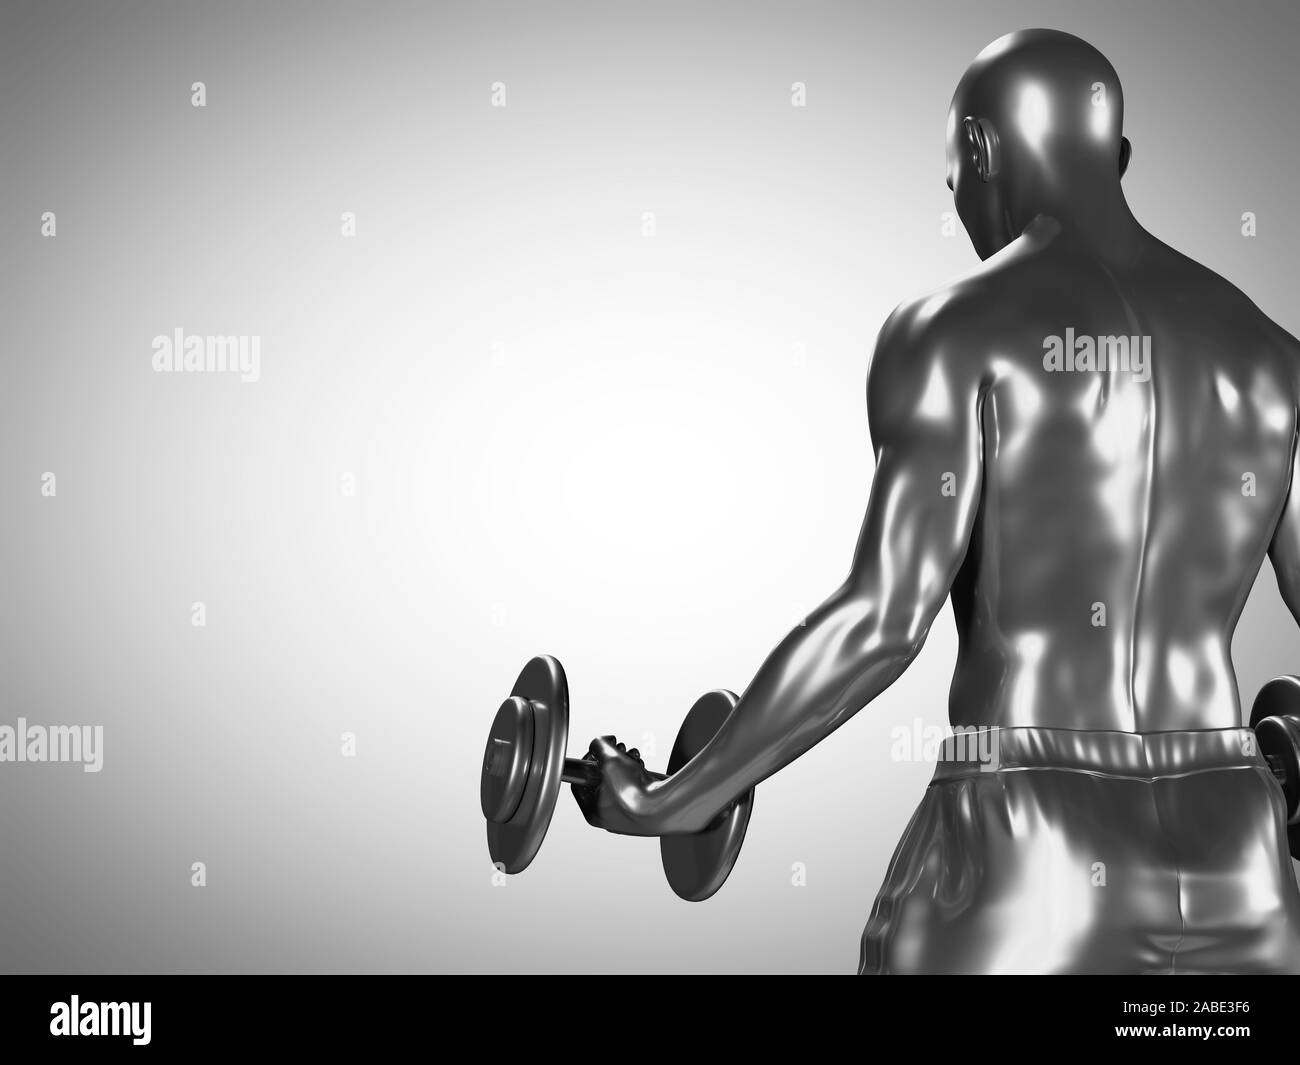 Médicalement en rendu 3d illustration d'un précise metallic man lifting dumbbells Banque D'Images